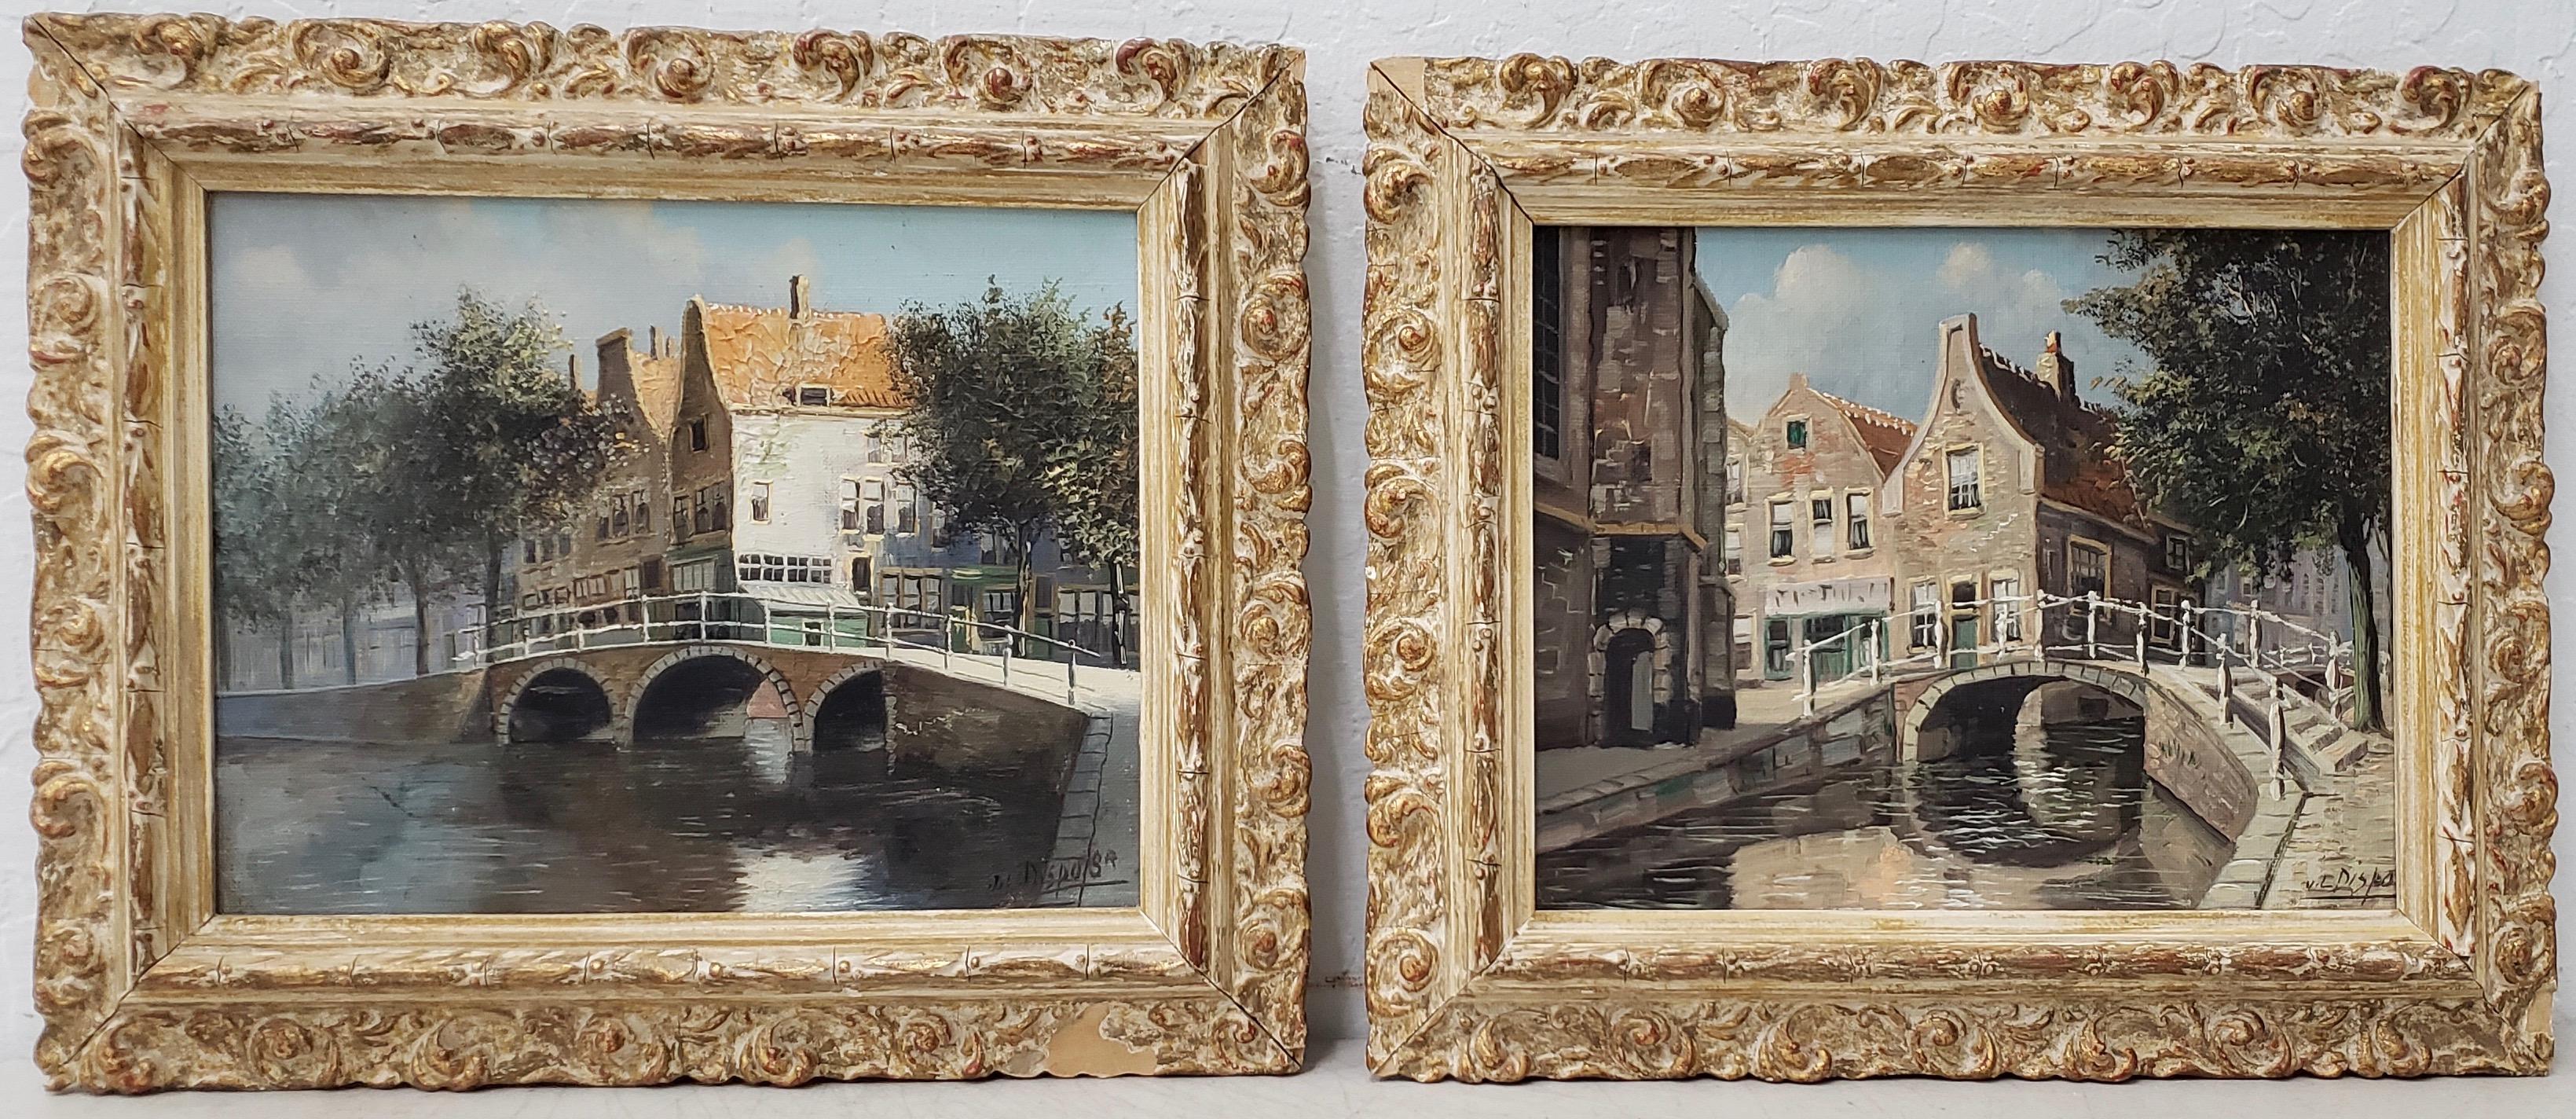 Scenes of Amsterdam  - Art by Jacobus Lambertus Dispo Sr.